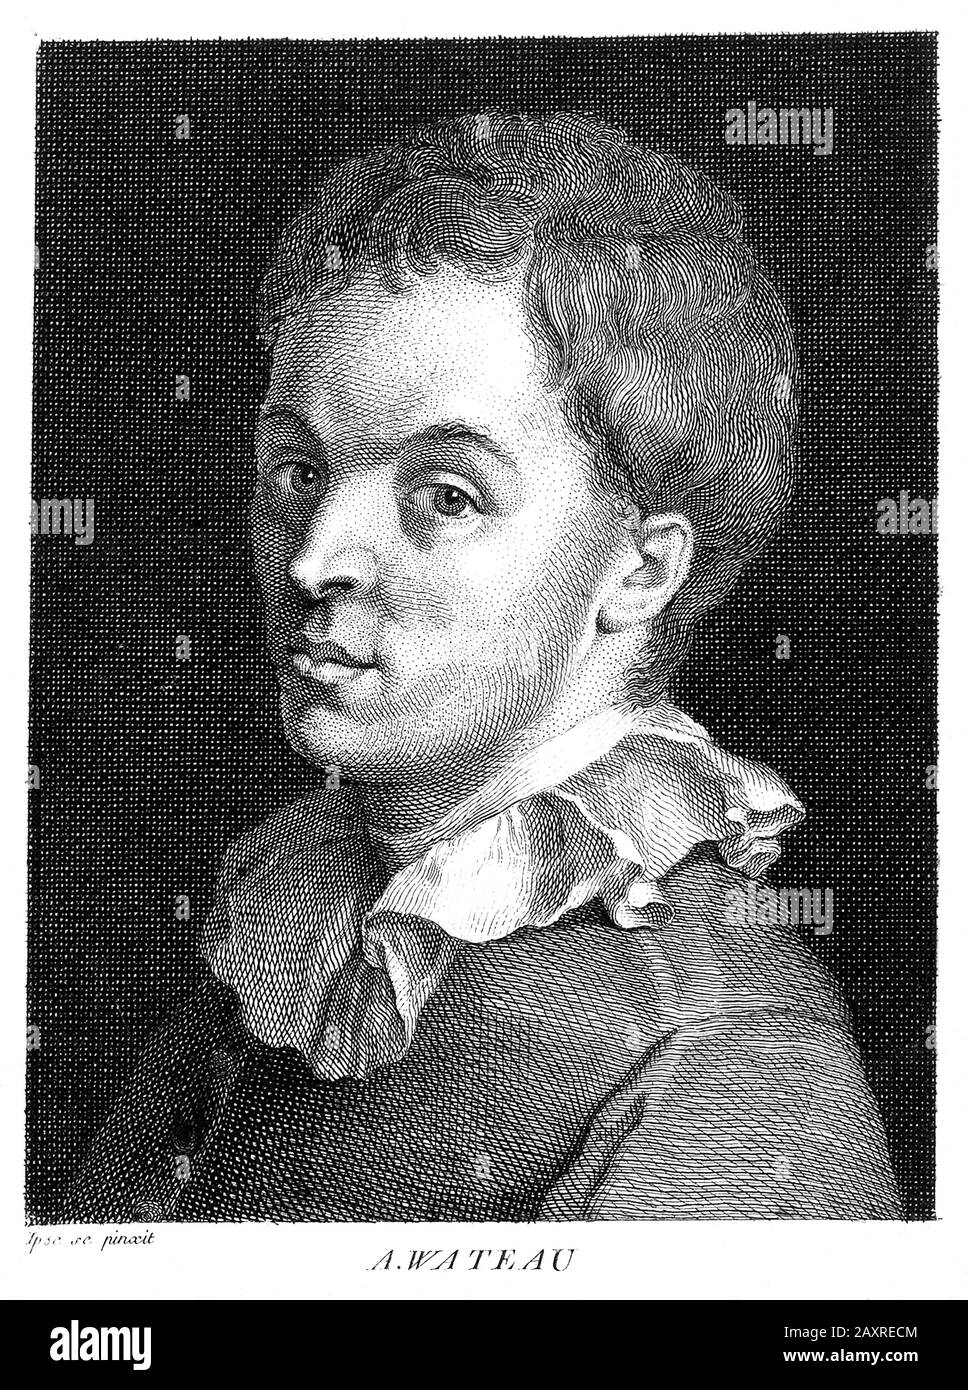 1710 Ca, Paris, FRANKREICH: Der französische Rokoko-Maler Antoine WATTEAU (* 1684; † 1721), geboren als Jean-Antoine Watteau. Porträt eines undentifizierten französischen Graveurs aus einem Watteau-Selbstporträt, das 1727 pubbliert wurde. - KUNST - ARTI VISIVE - ARTE - Francia - PORTRÄT - RITRATTO - GESCHICHTE - FOTO STORICHE - Colletto - Kragen - AUTORITRATTO - Incisione - Illustrazione - Illustration -- Archivio GBB Stockfoto